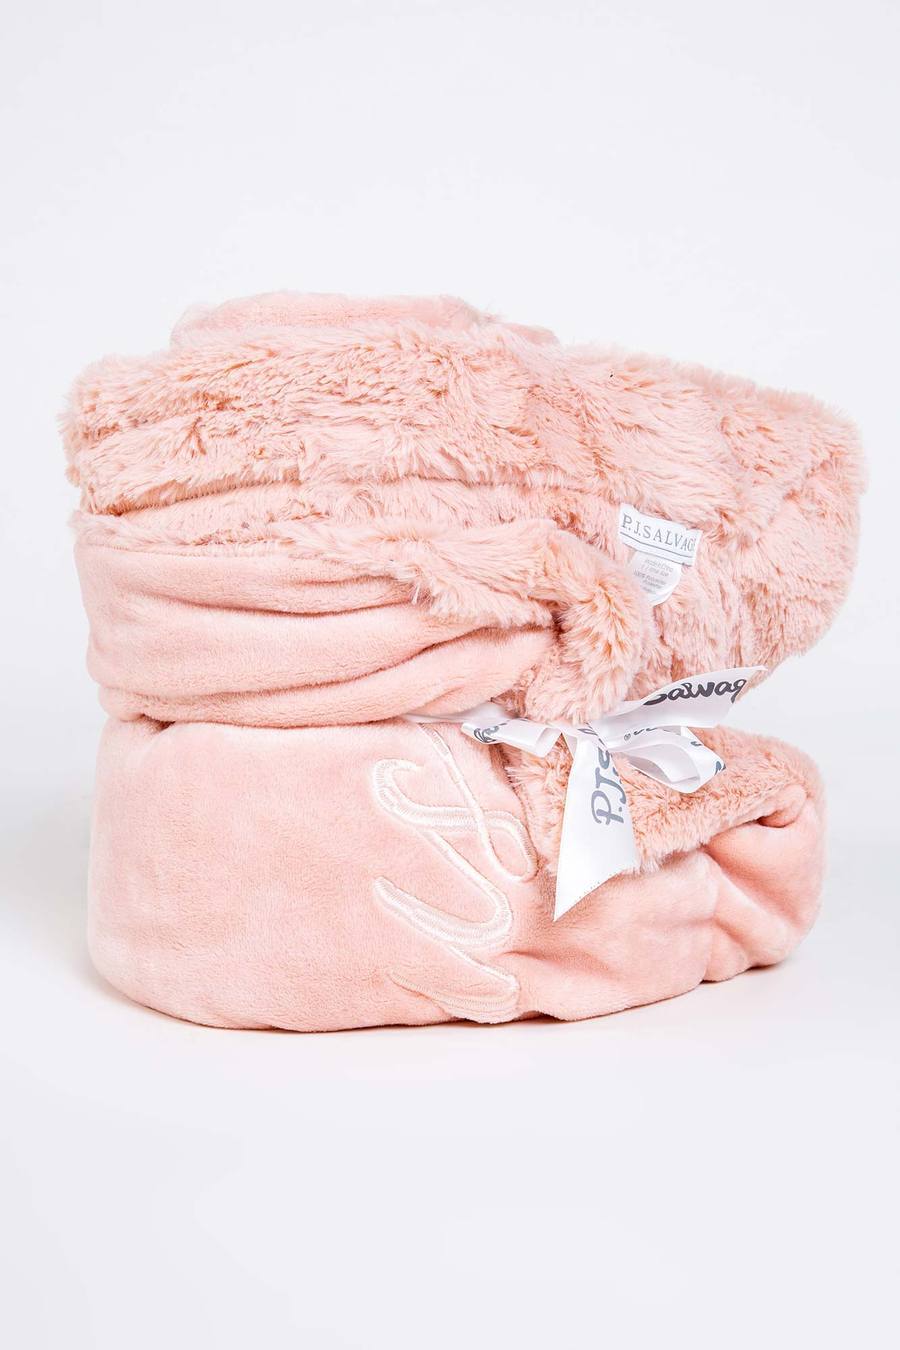 Luxe Plush Blanket - Hello Gorgeous - The Posh Loft